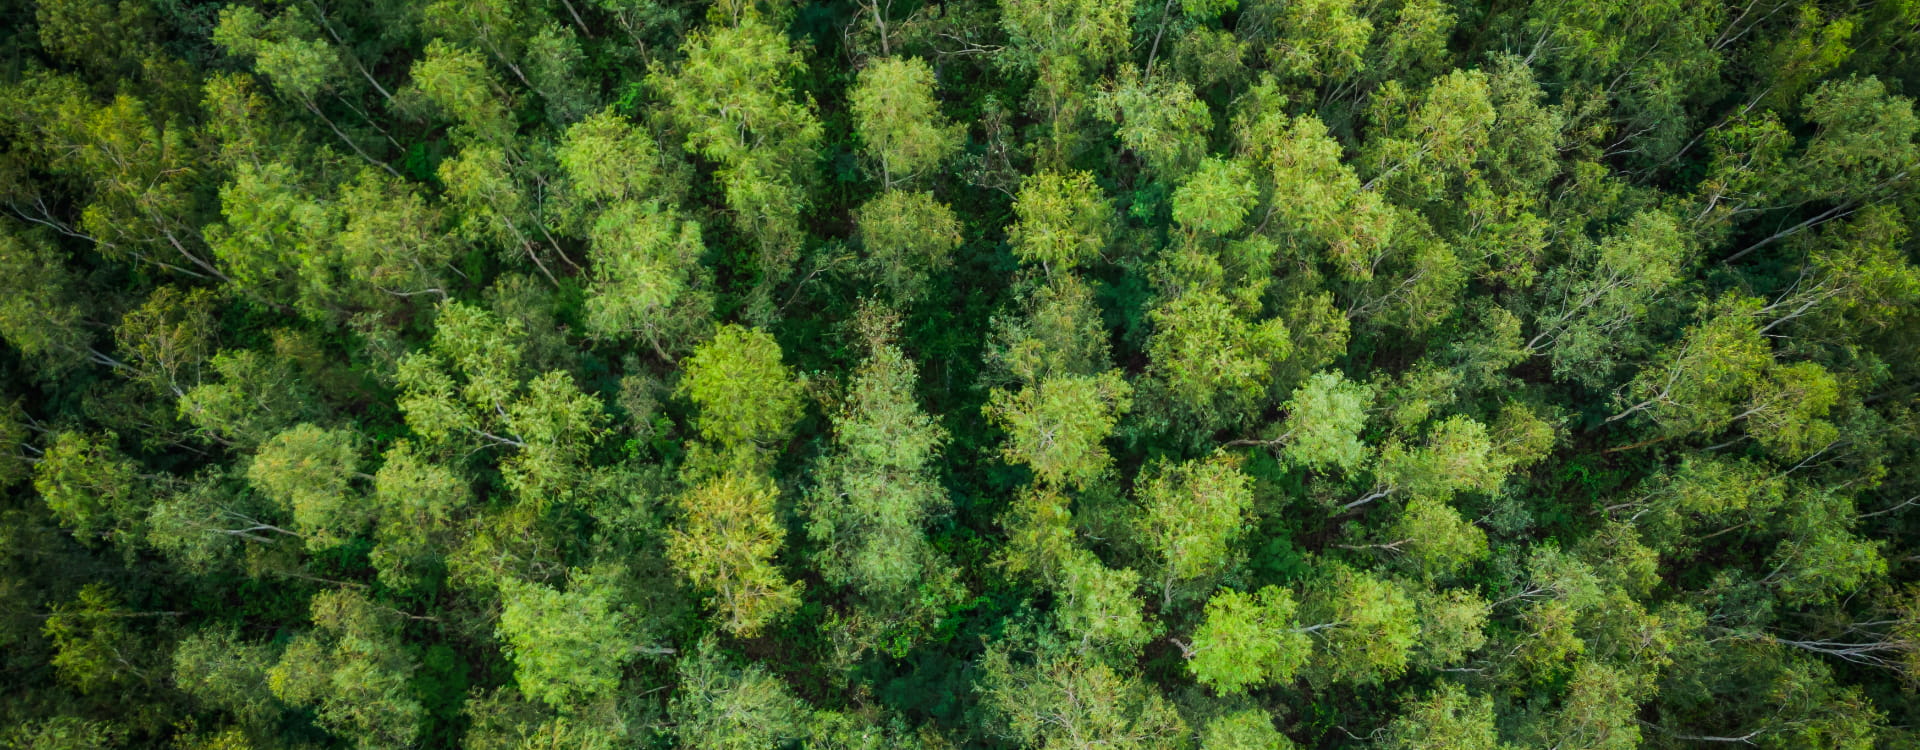 Vista aérea de un bosque frondoso de árboles con hojas verdes